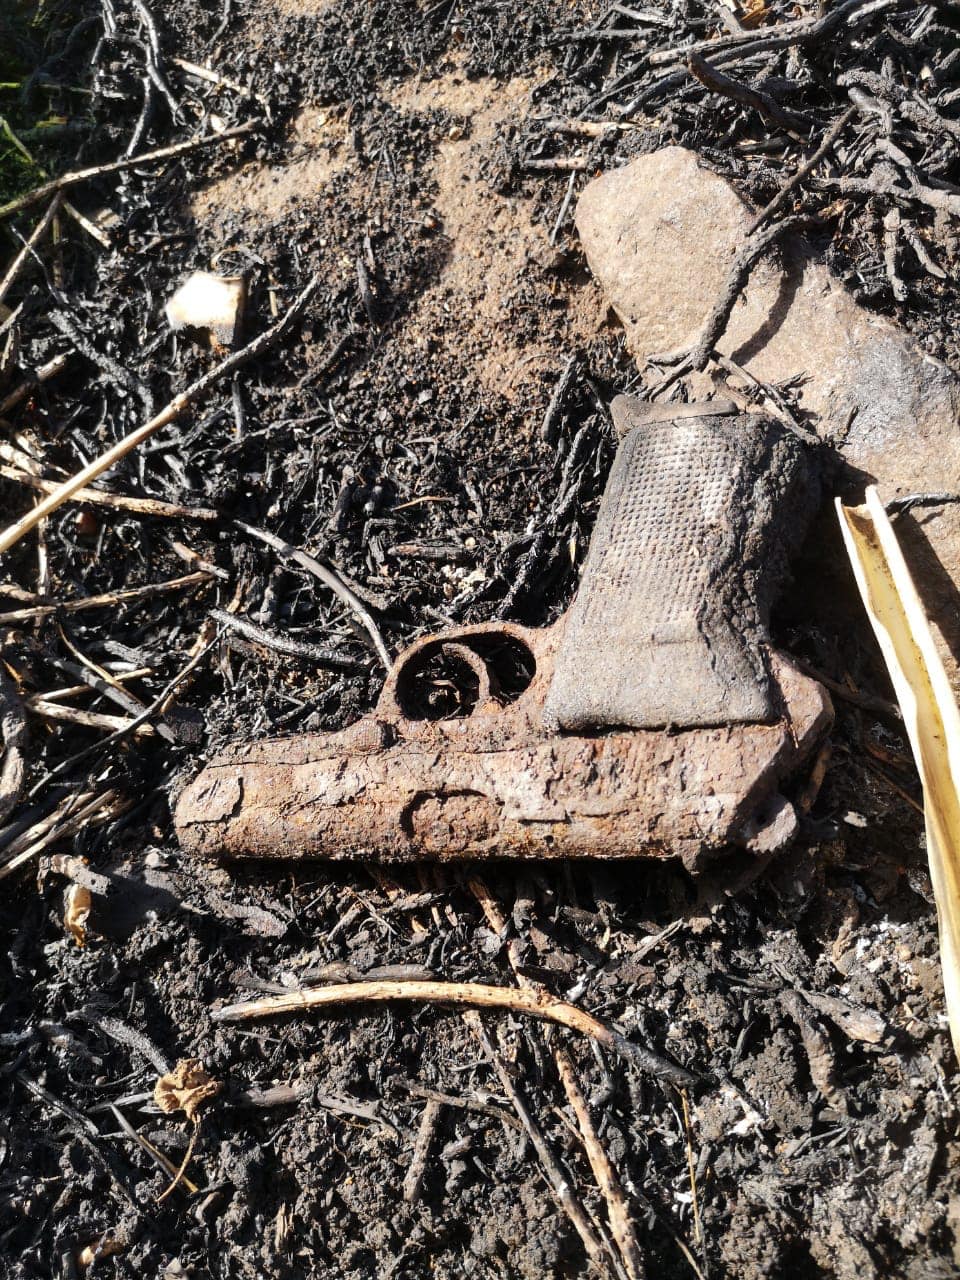 Firearm recovered in a bushfire in Canelands - KZN